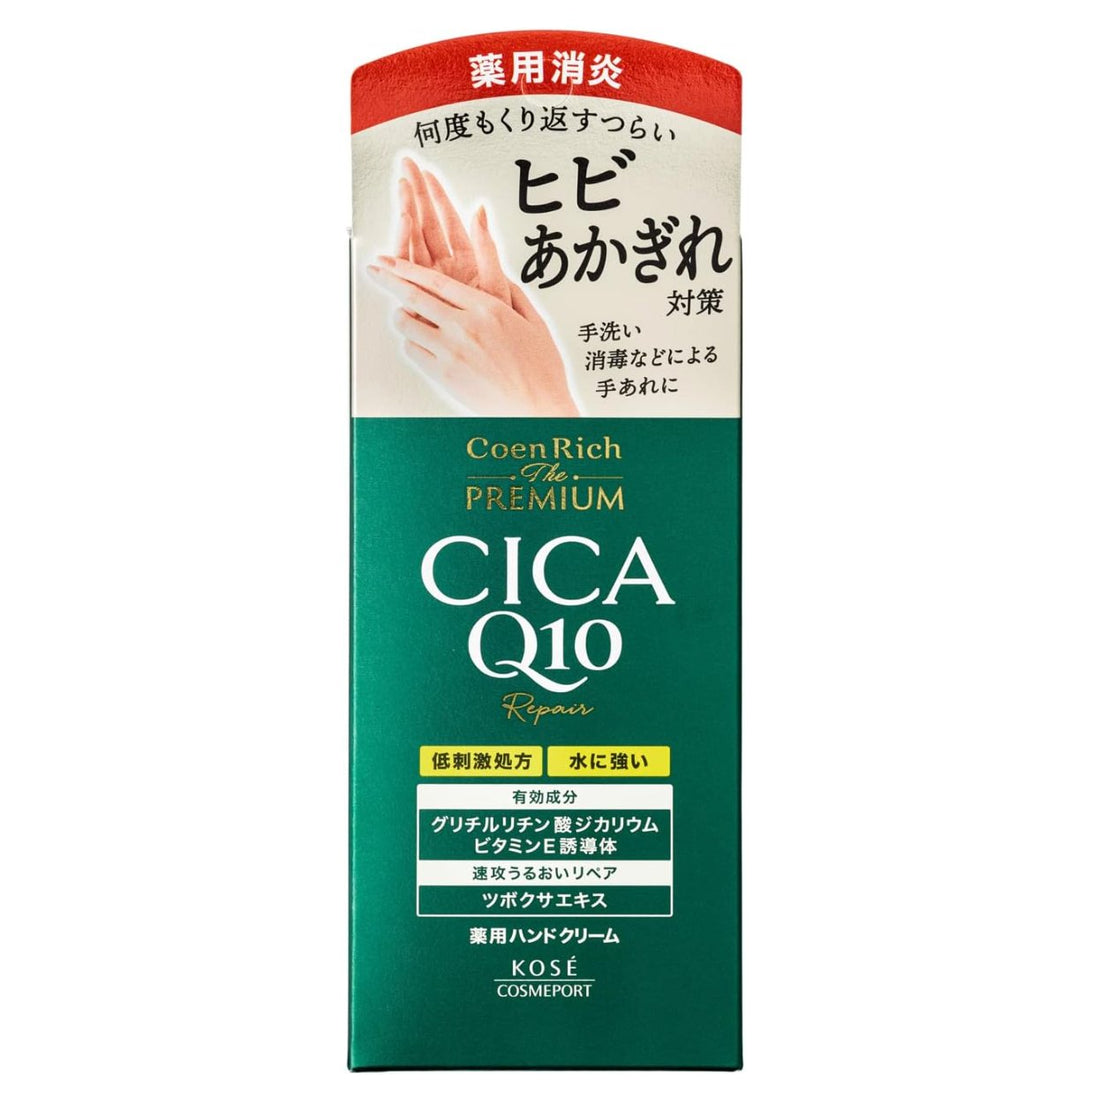 Kose Cosmeport Coen Rich The Premium Cica Repair Q10 Hand Cream - 60g - NihonMura